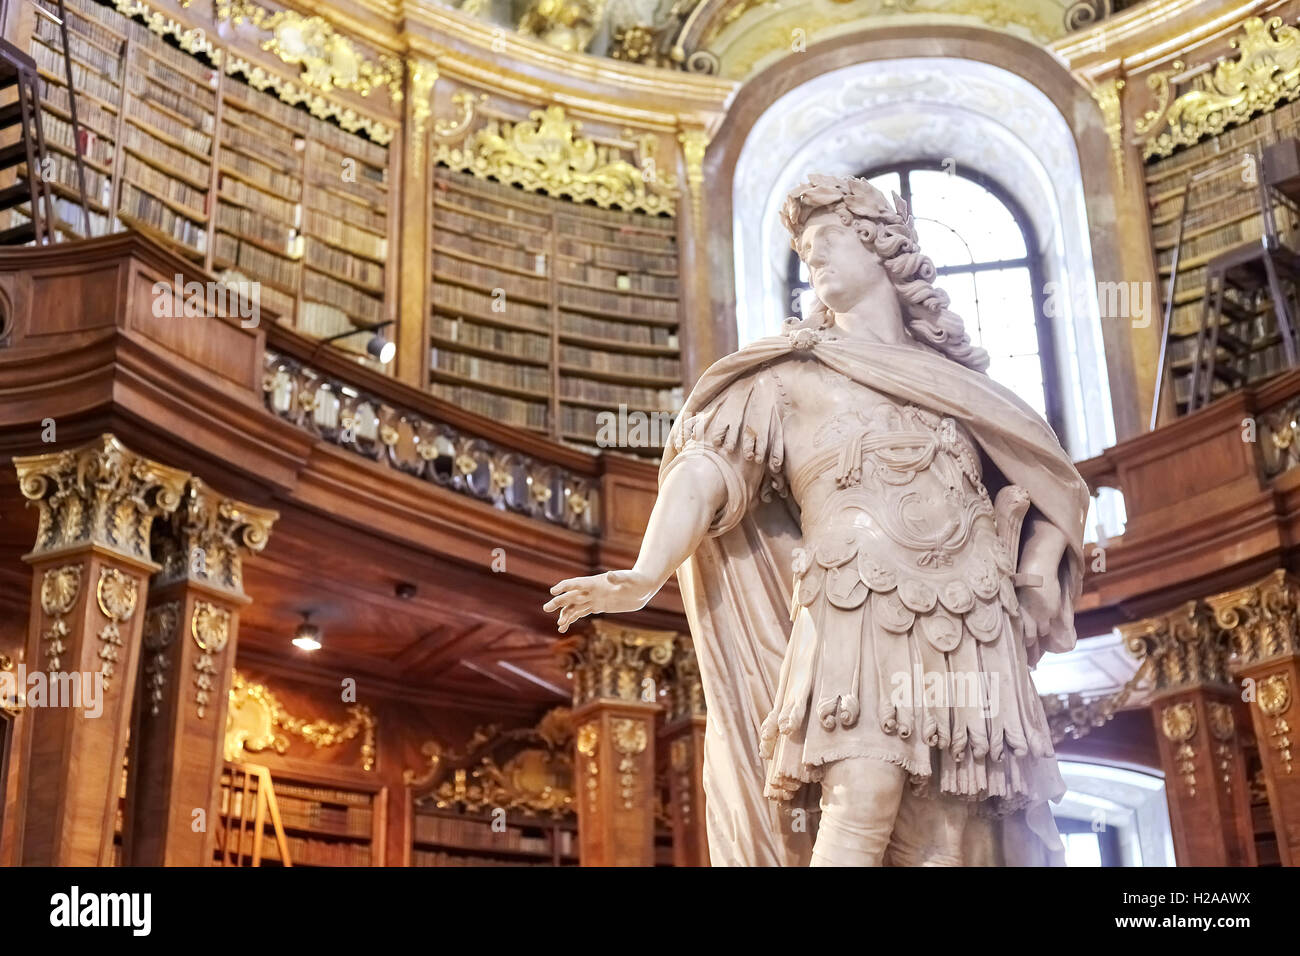 Wien, Österreich - 14. August 2016: Skulptur in der Prunksaal (Prunksaal), das Herz der Österreichischen Nationalbibliothek. Stockfoto